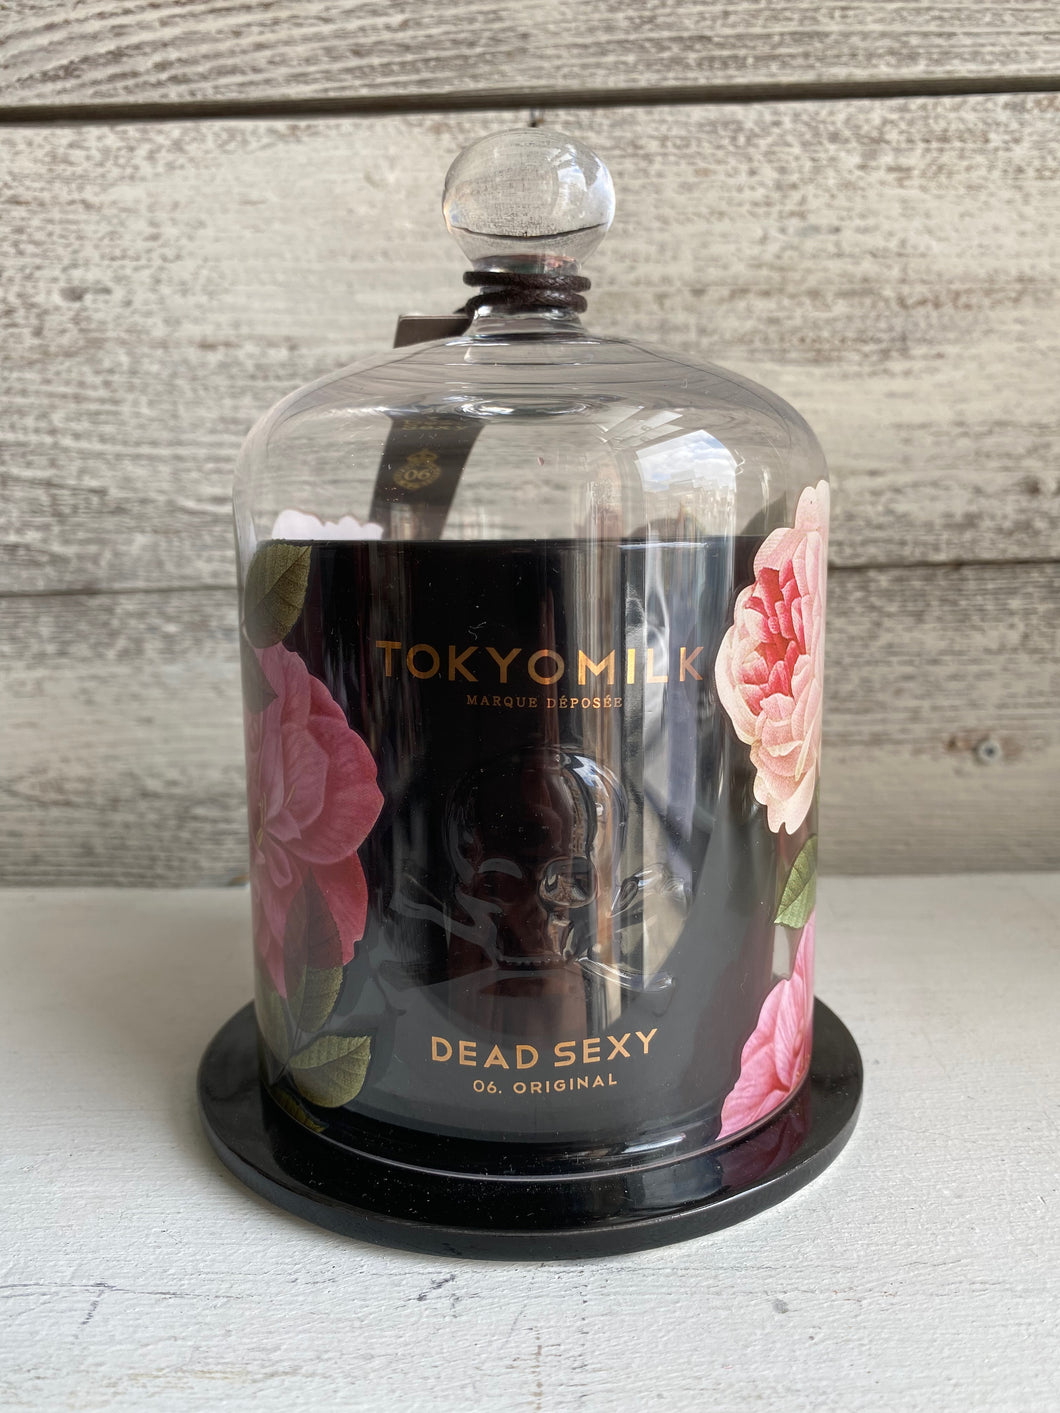 Tokyo Milk - Dead Sexy Ceramic Candle (Original)